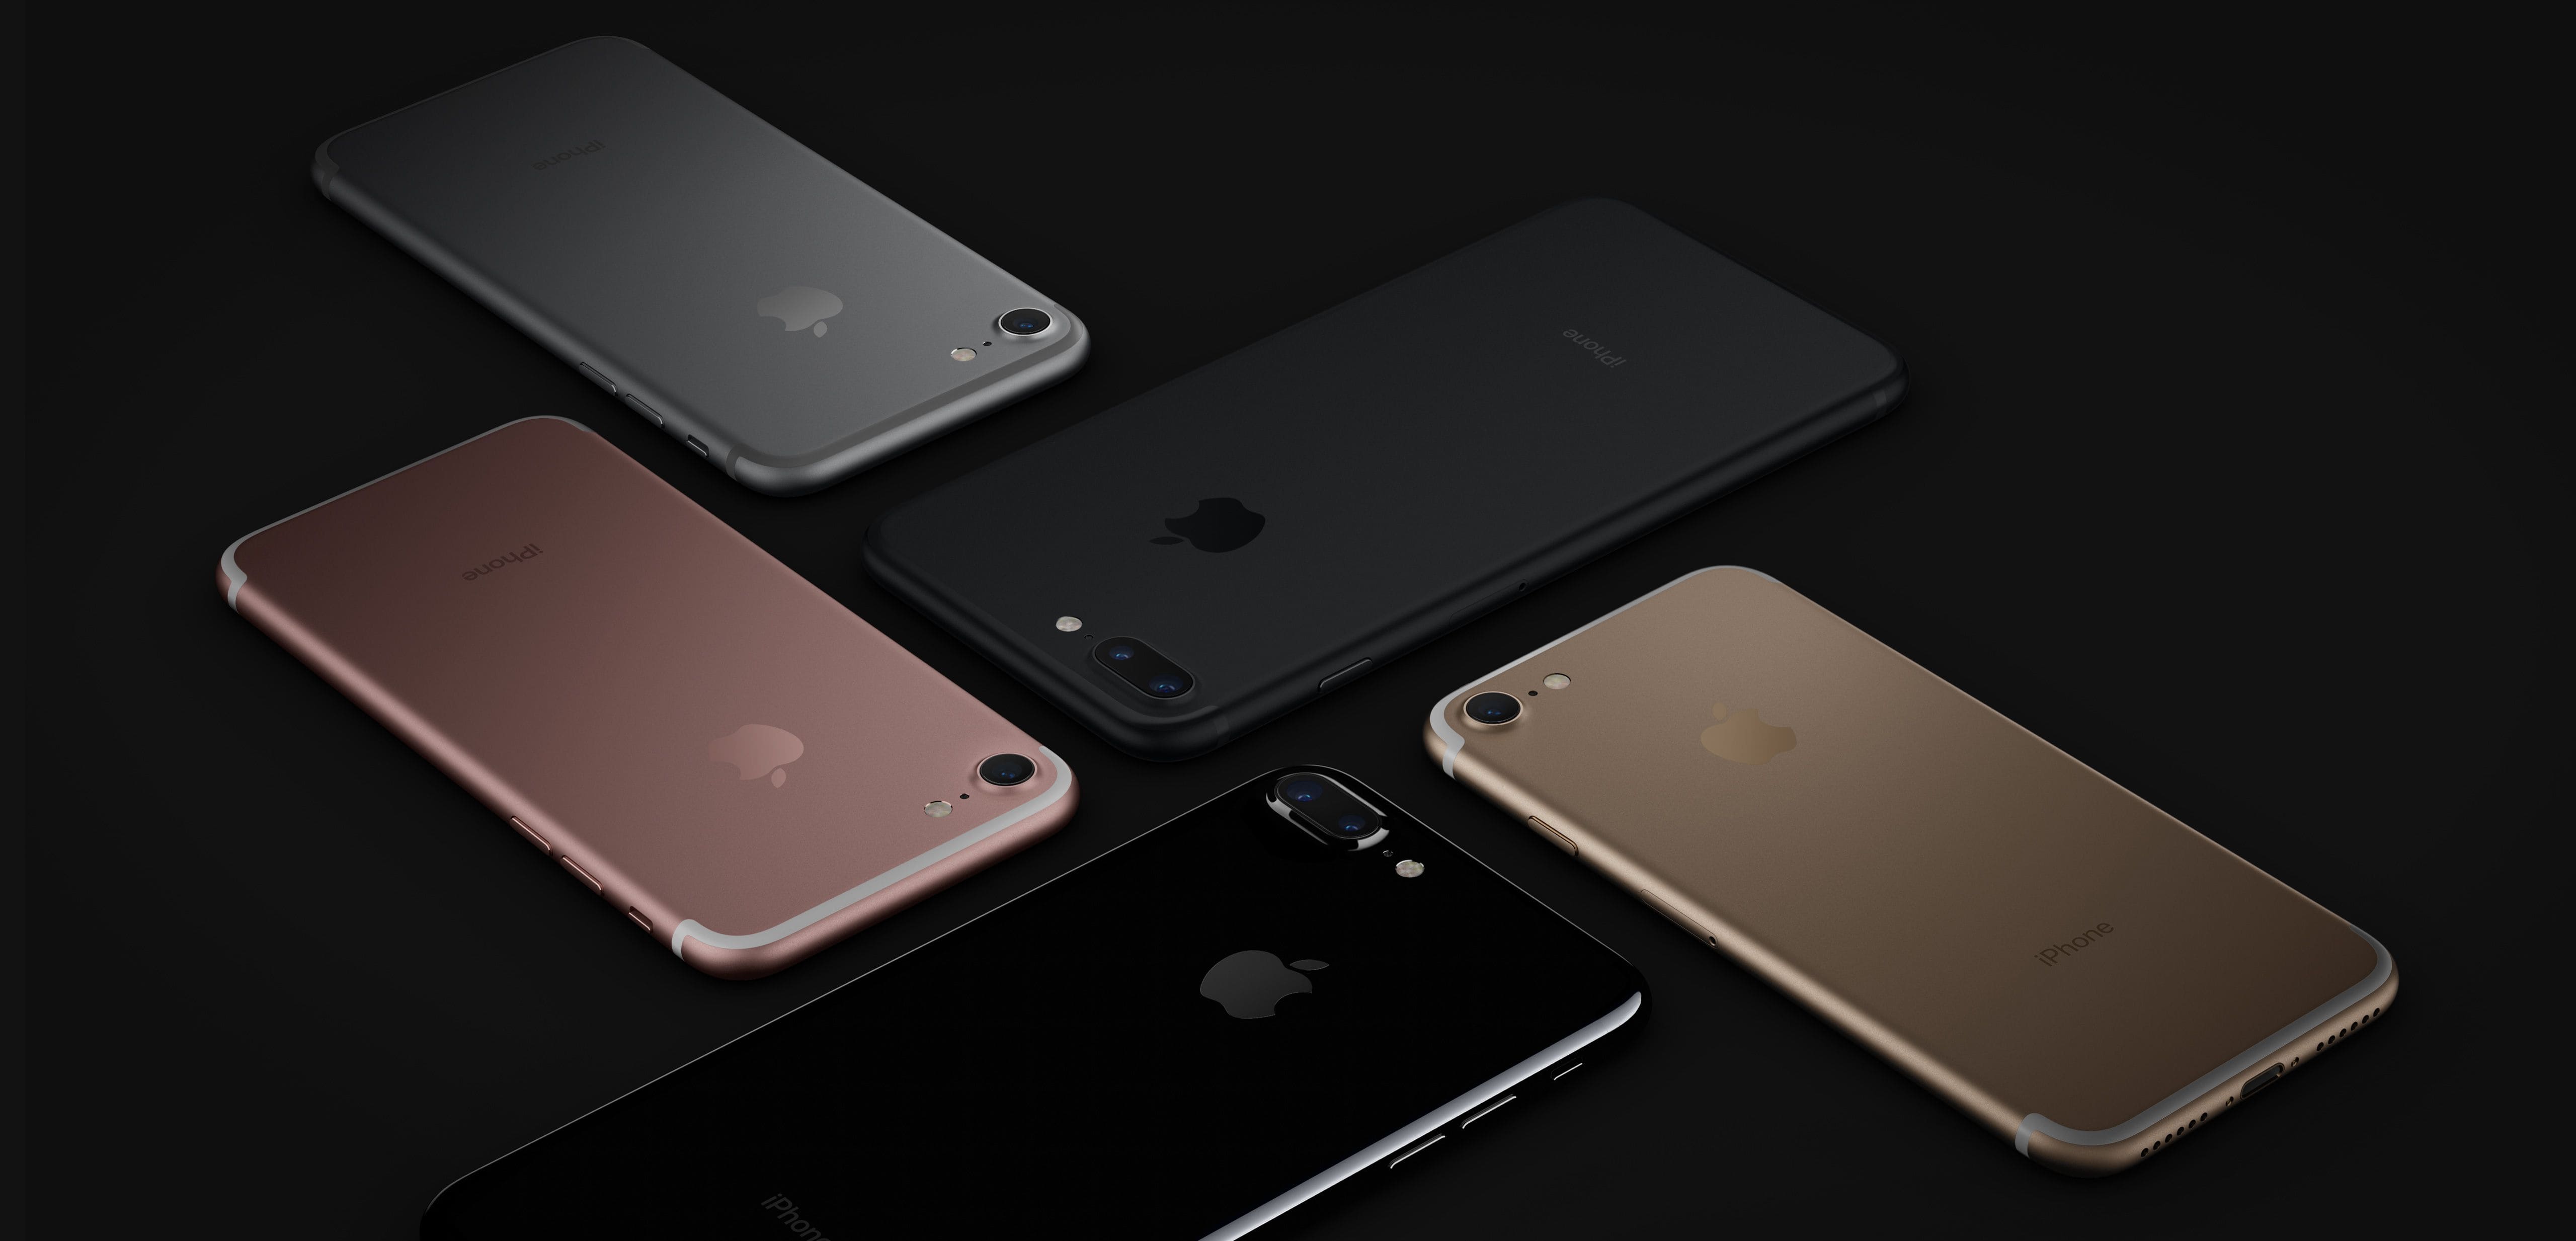 Đẹp mê mẩn với bộ sưu tập 5 màu sắc của iPhone 7